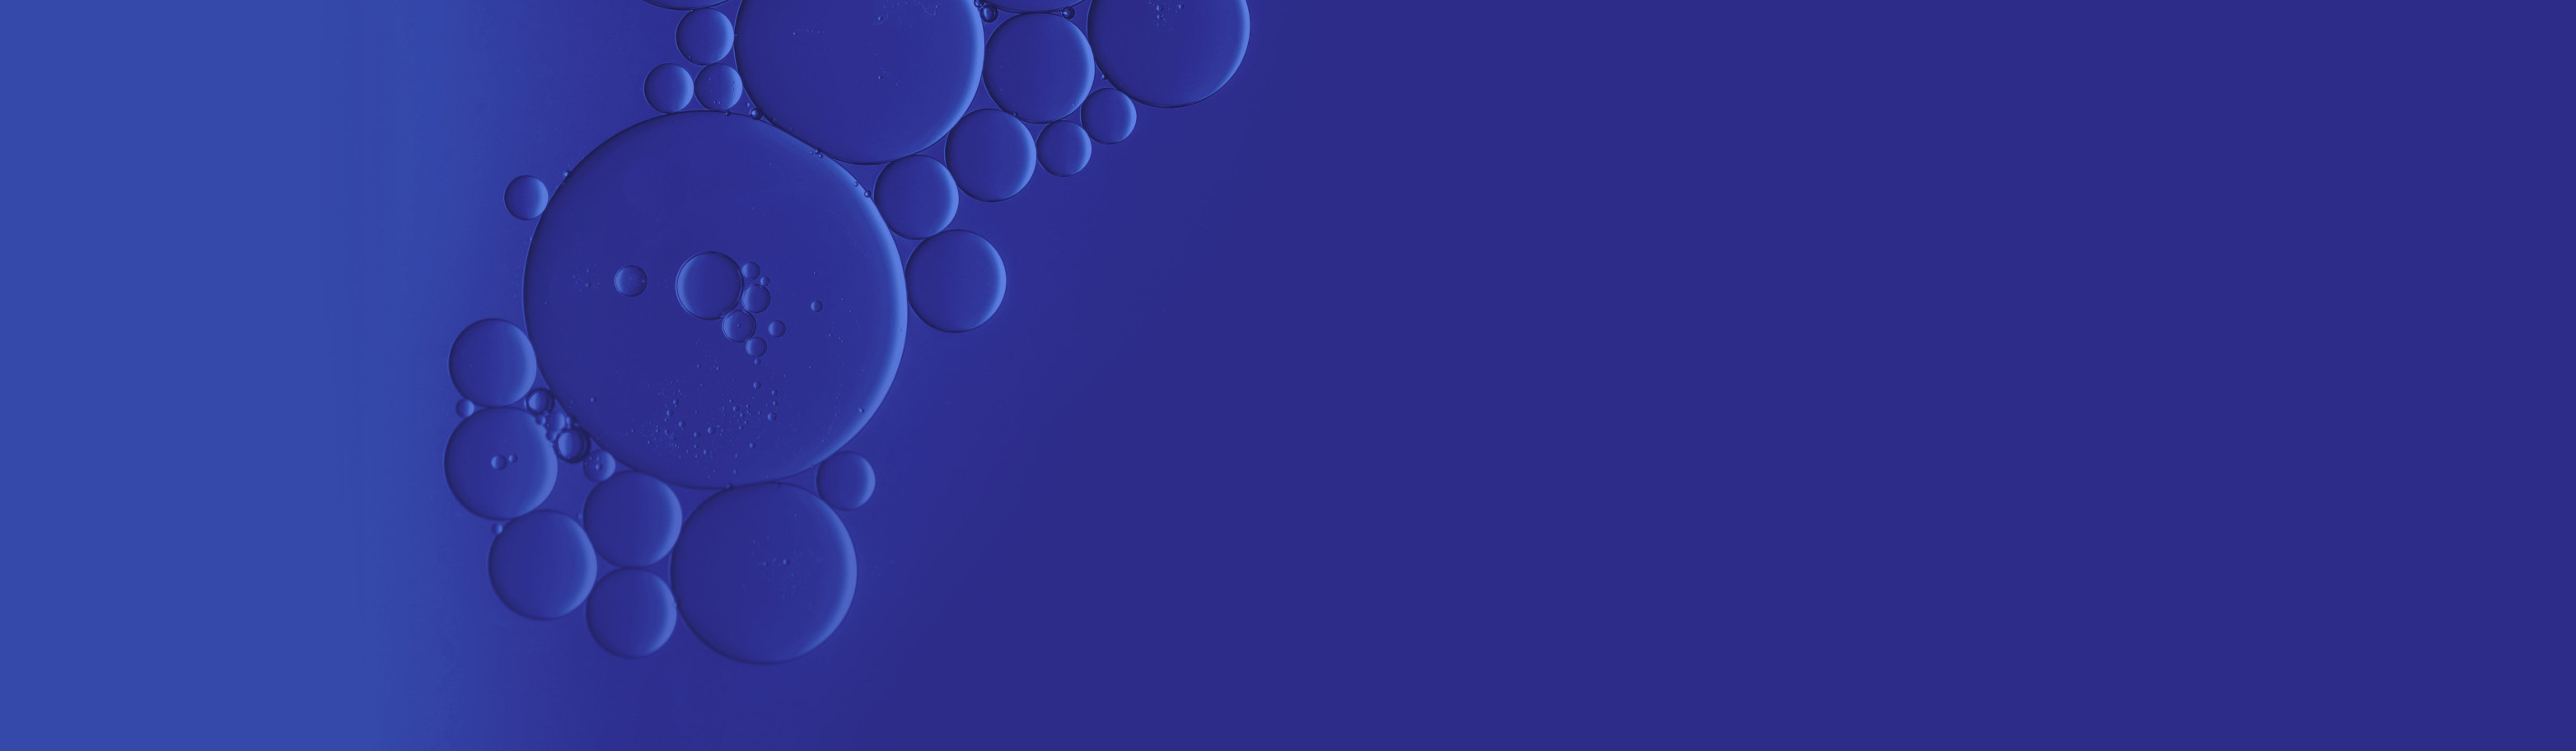 Dark blue bubbles